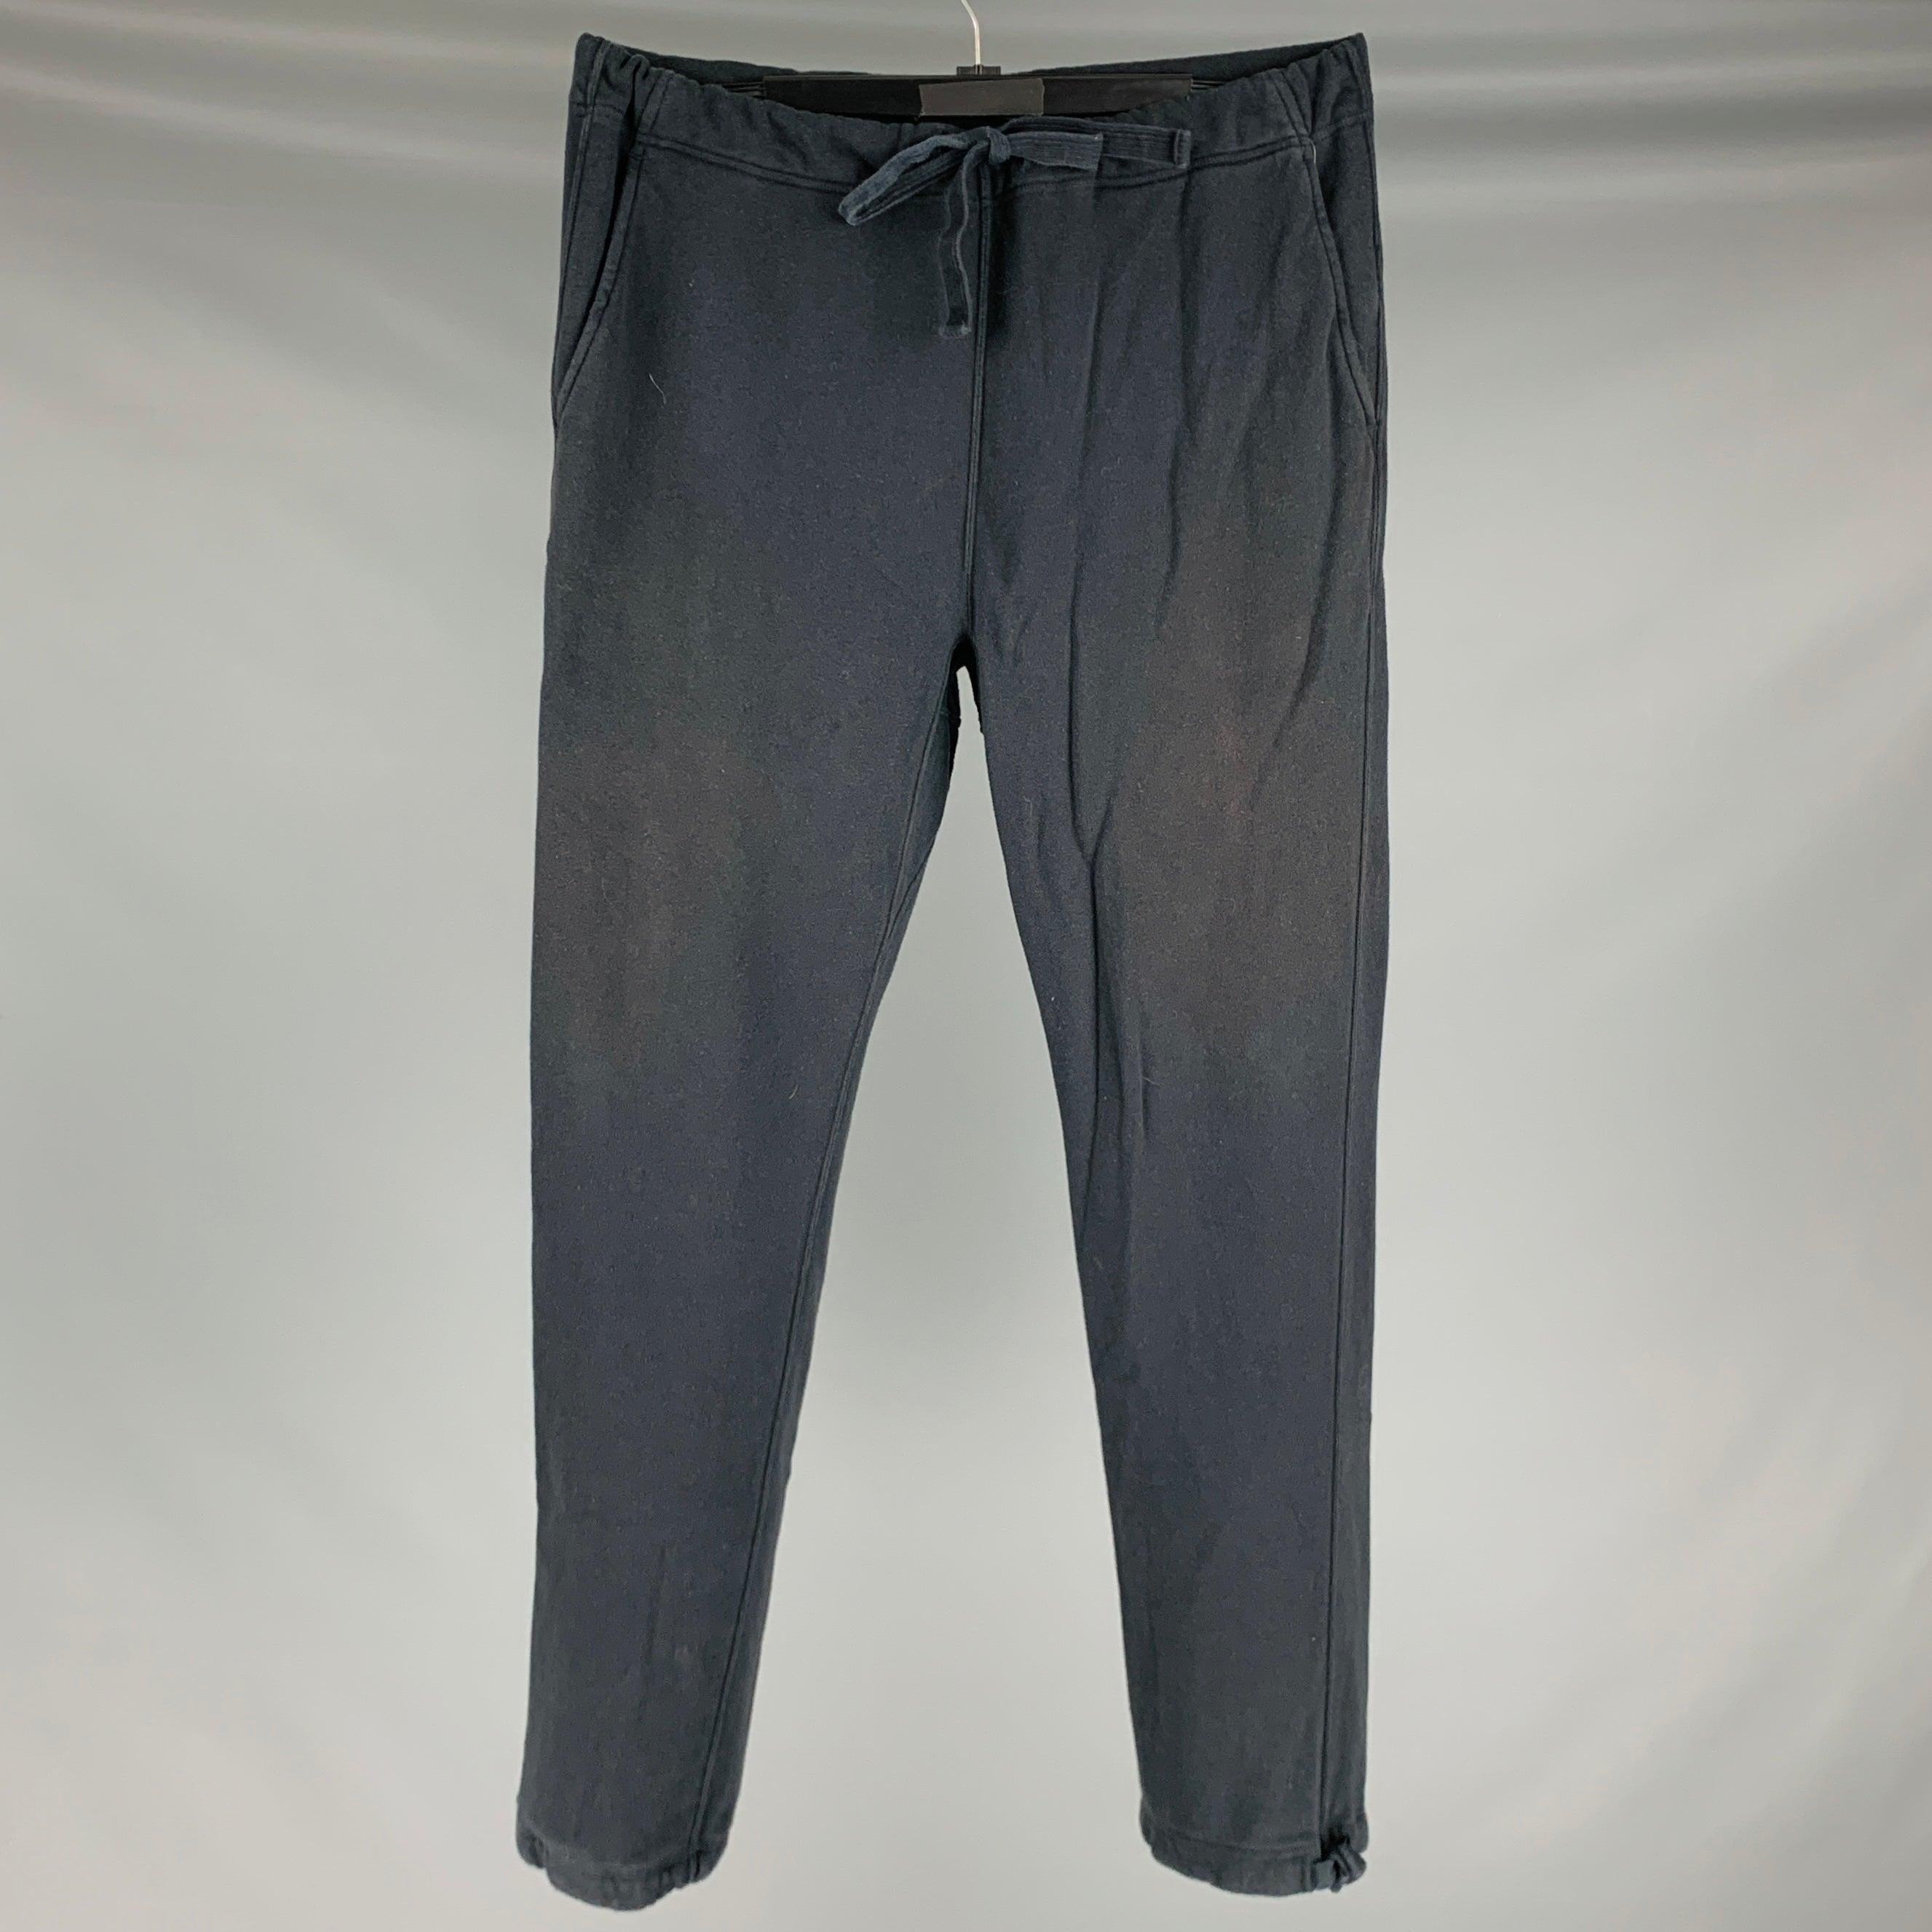 VISVIM -Sweat Pants DMGD- Size S Black Wash Cotton Drawstring Casual Pants en vente 1